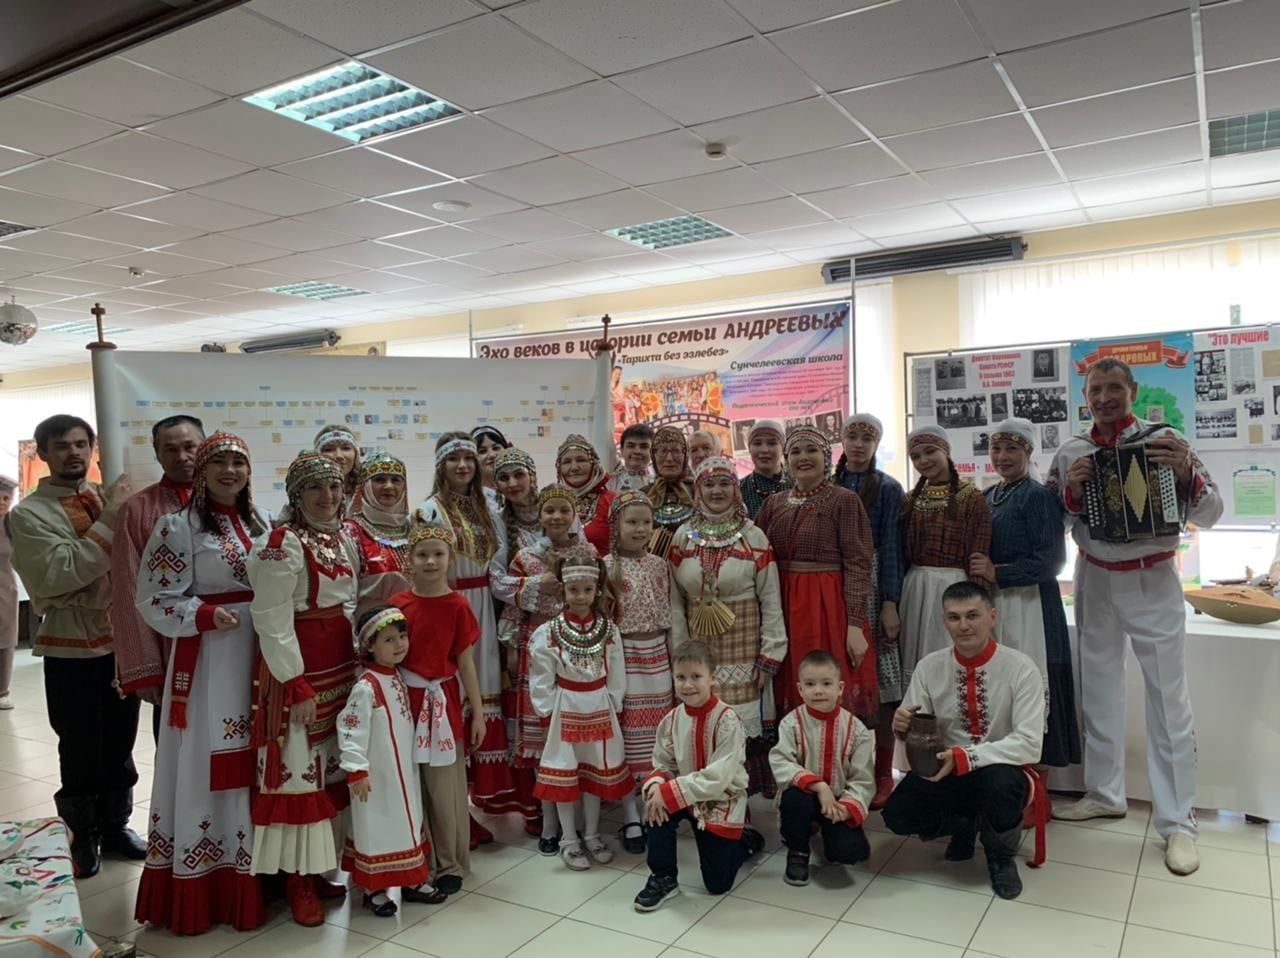 Потомки Андреевых из Аксубаевского района стали победителями зонального фестиваля родословной